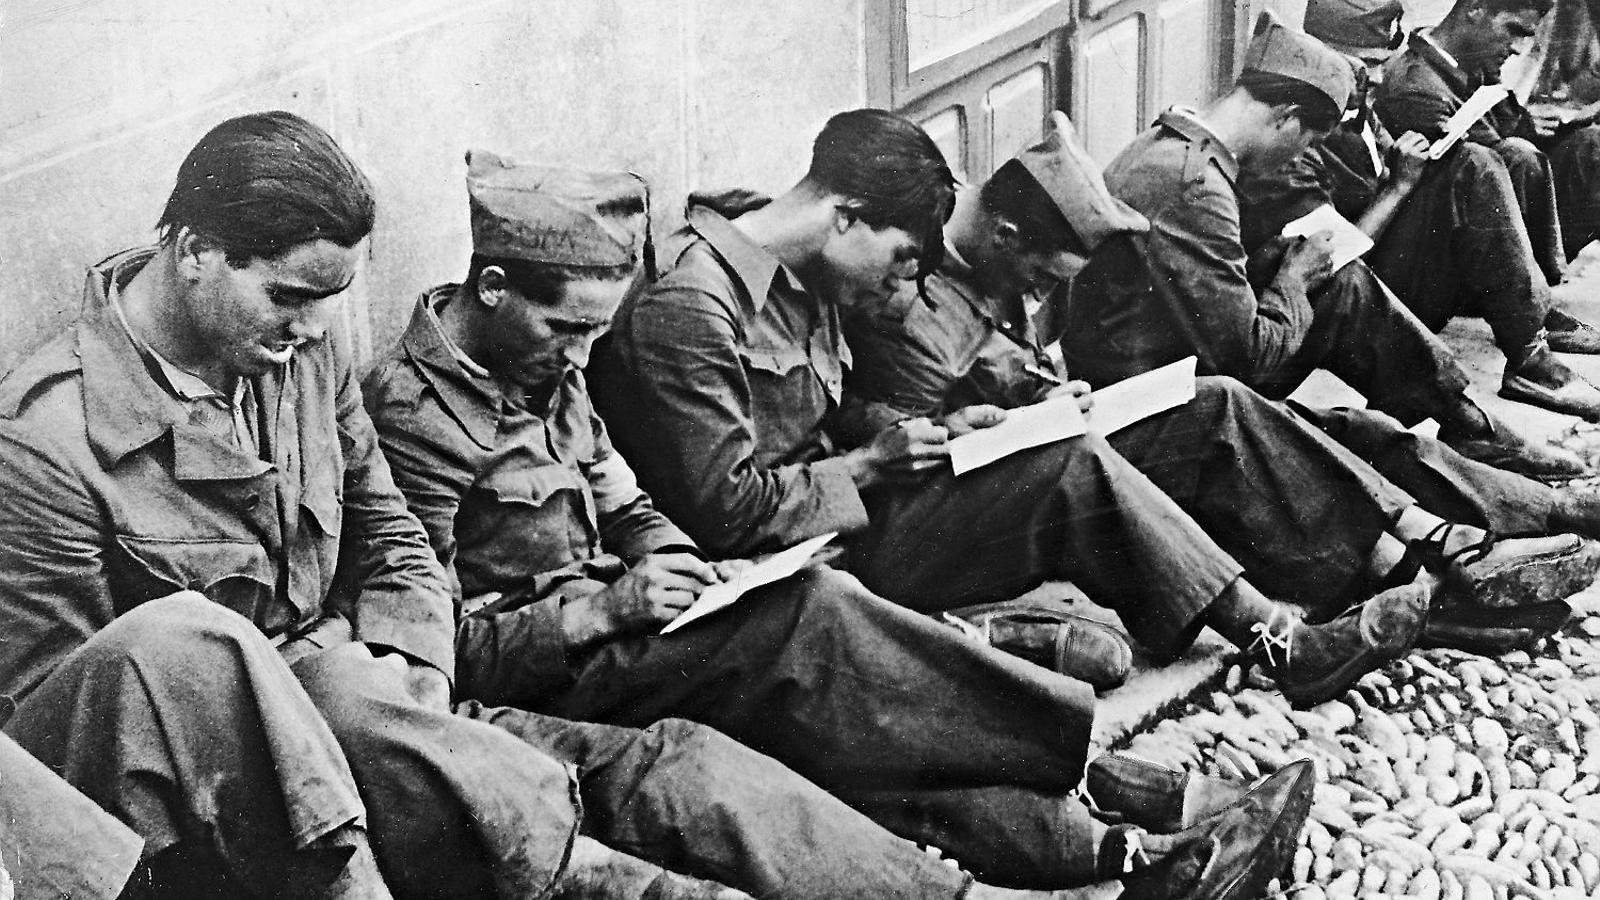 Soldats republicans escrivint cartes a casa el 1936.